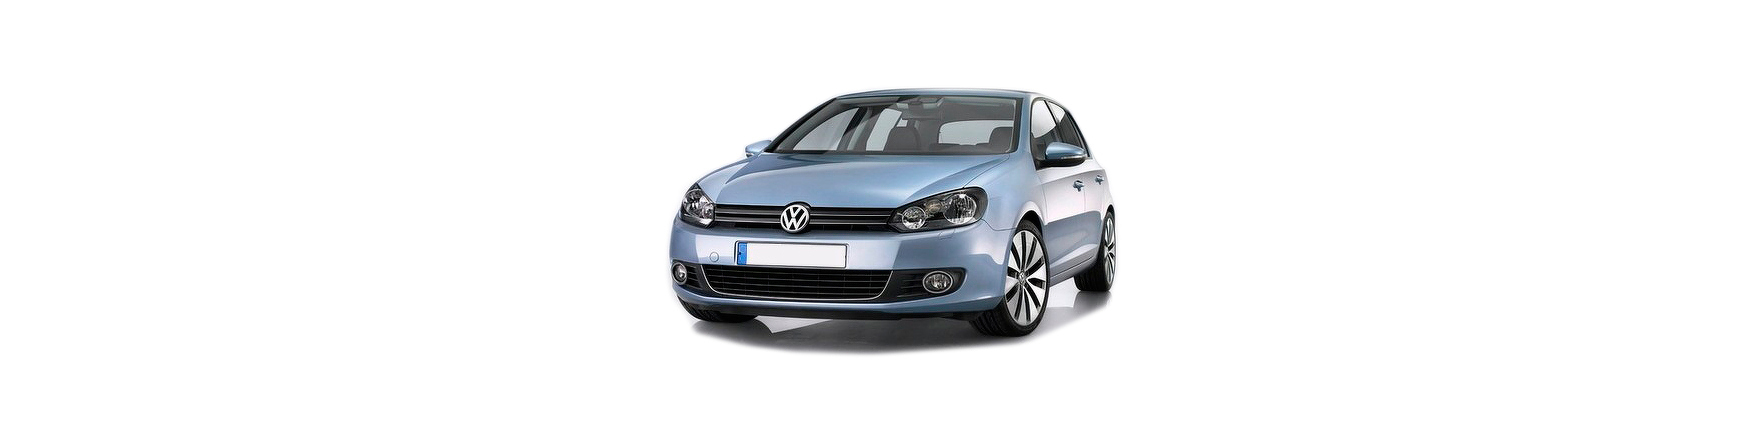 Piezas y Recambios de Volkswagen Golf VI (5K) de 2008 a 2012 |Veramauto.es